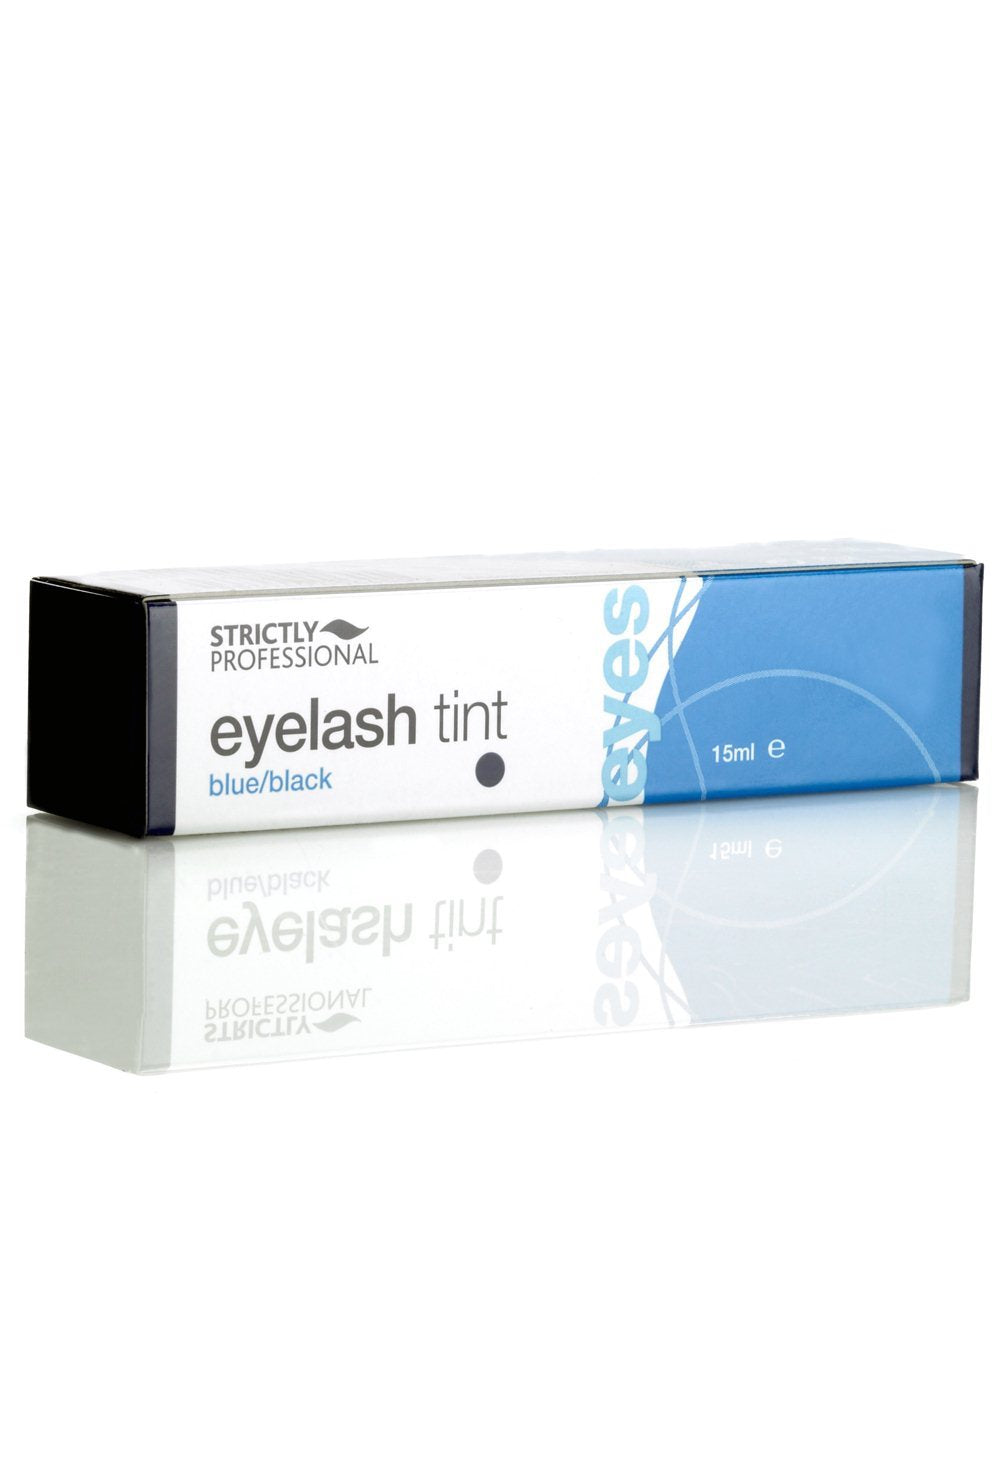 Strictly Professional Eyelash Tint Black | Blue (15ml)